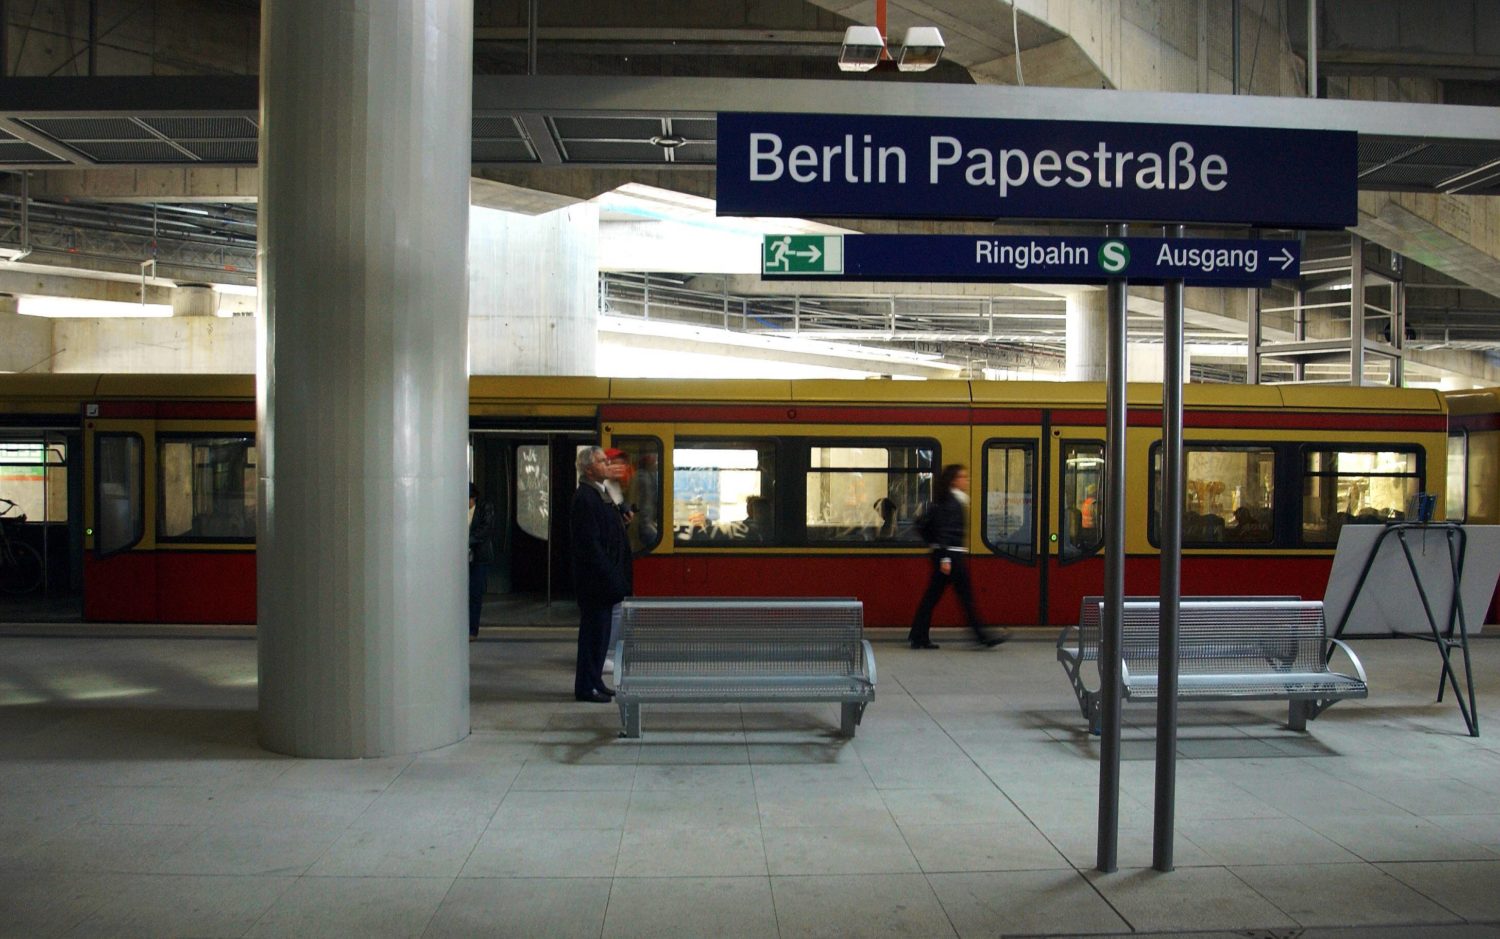 S-Bahn-Gleis auf der unteren Ebene des Bahnhofs Südkreuz, der eine zeitlang noch wie sein Vorgänger hieß. Foto: Imago Images/Sven Lambert